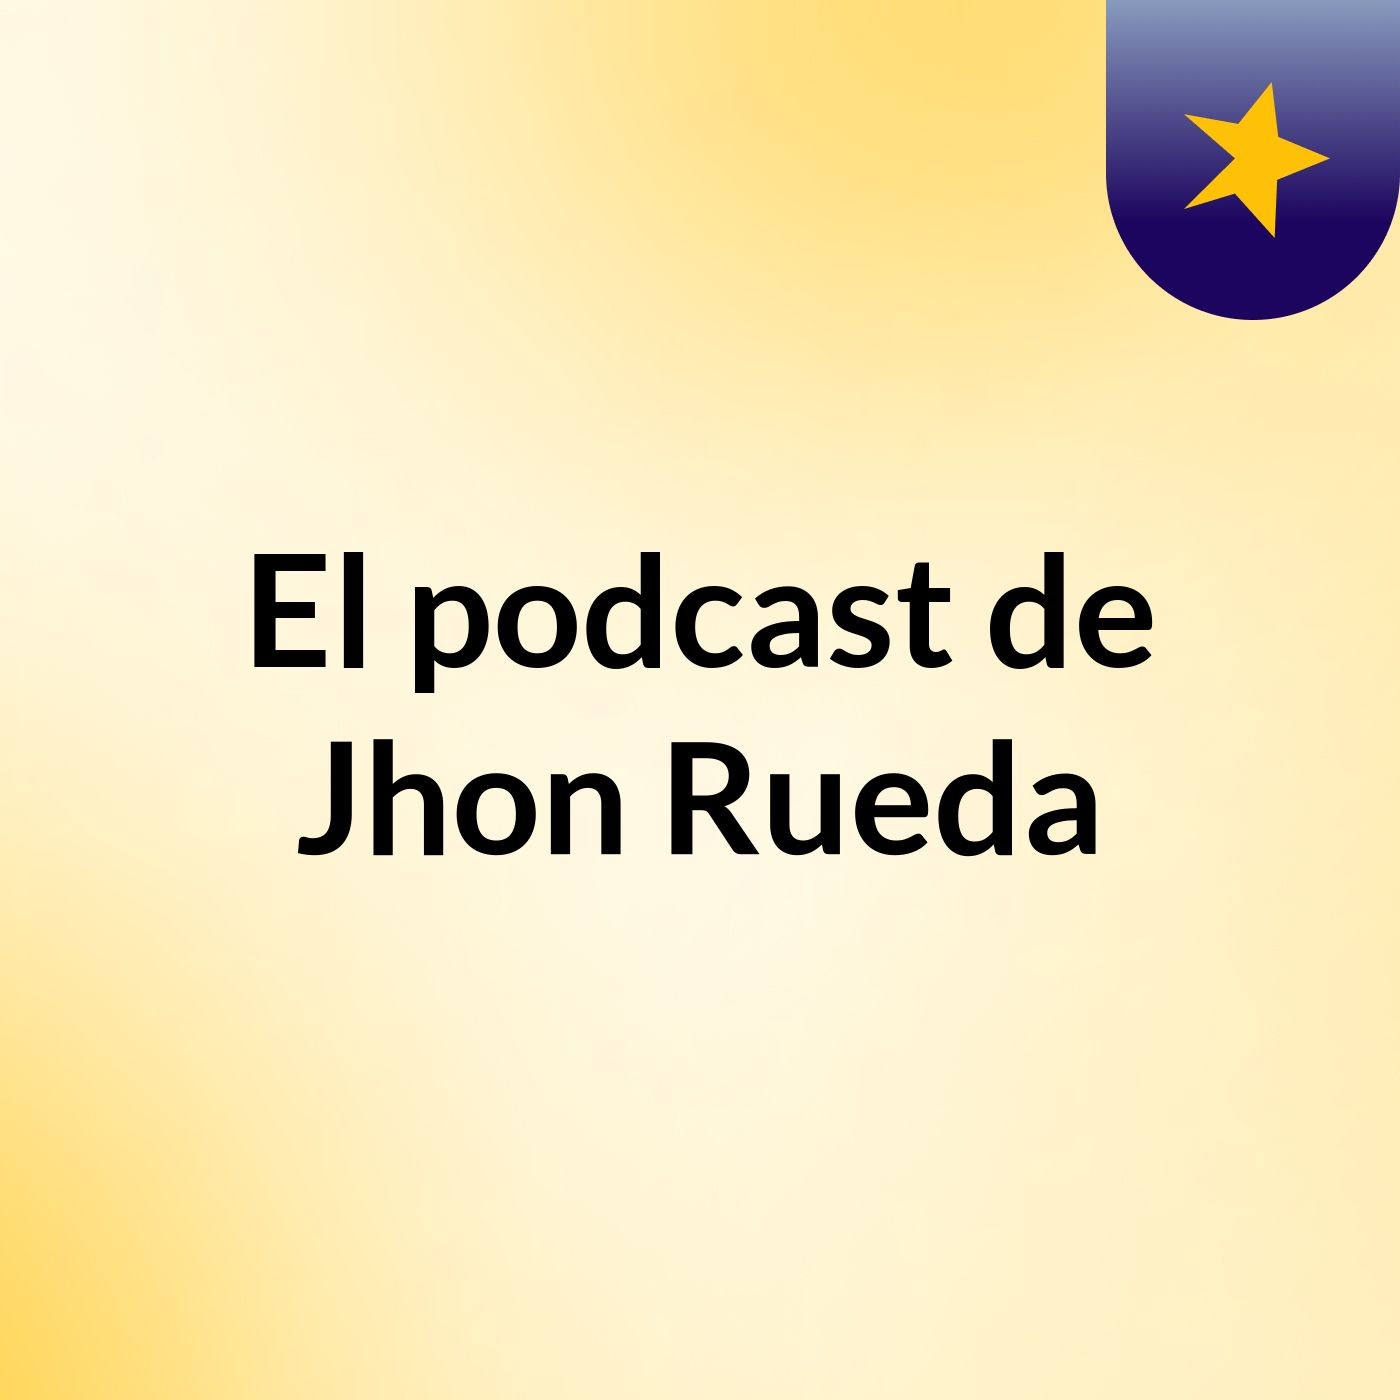 Episodio 5 - El podcast de Jhon Rueda